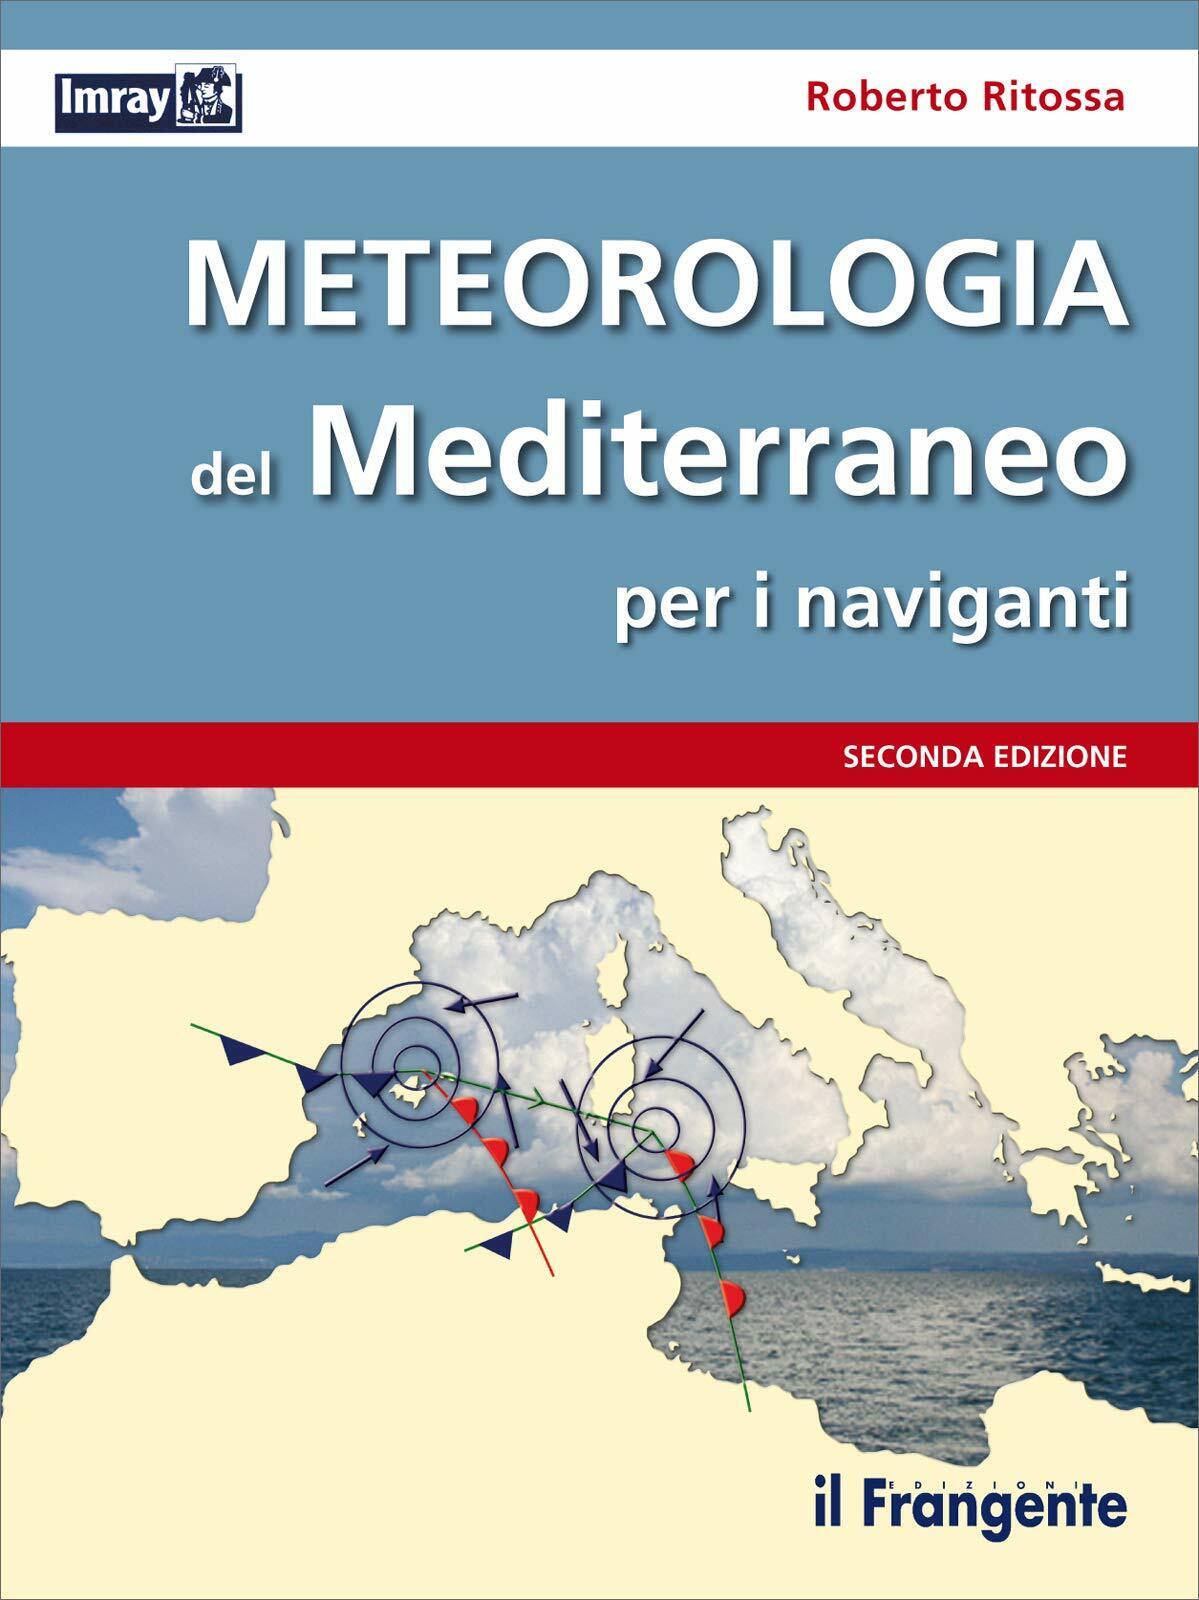 Meteorologia del Mediterraneo per i naviganti-Roberto Ritossa-Il Frangente-2013